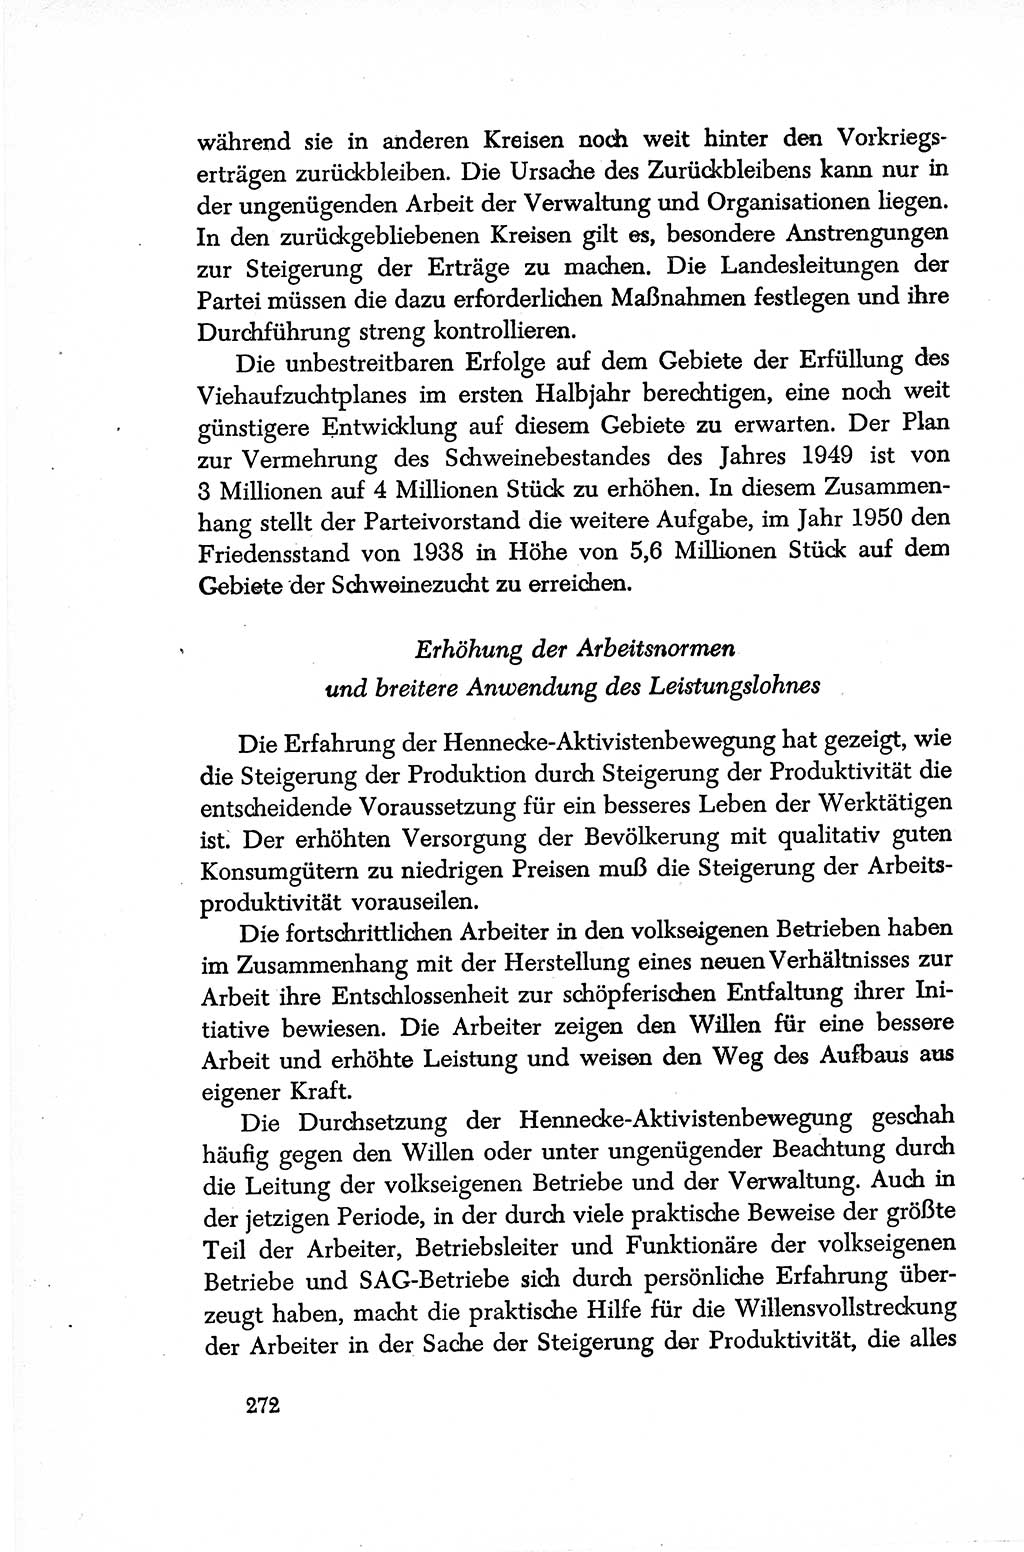 Dokumente der Sozialistischen Einheitspartei Deutschlands (SED) [Sowjetische Besatzungszone (SBZ) Deutschlands/Deutsche Demokratische Republik (DDR)] 1948-1950, Seite 272 (Dok. SED SBZ Dtl. DDR 1948-1950, S. 272)